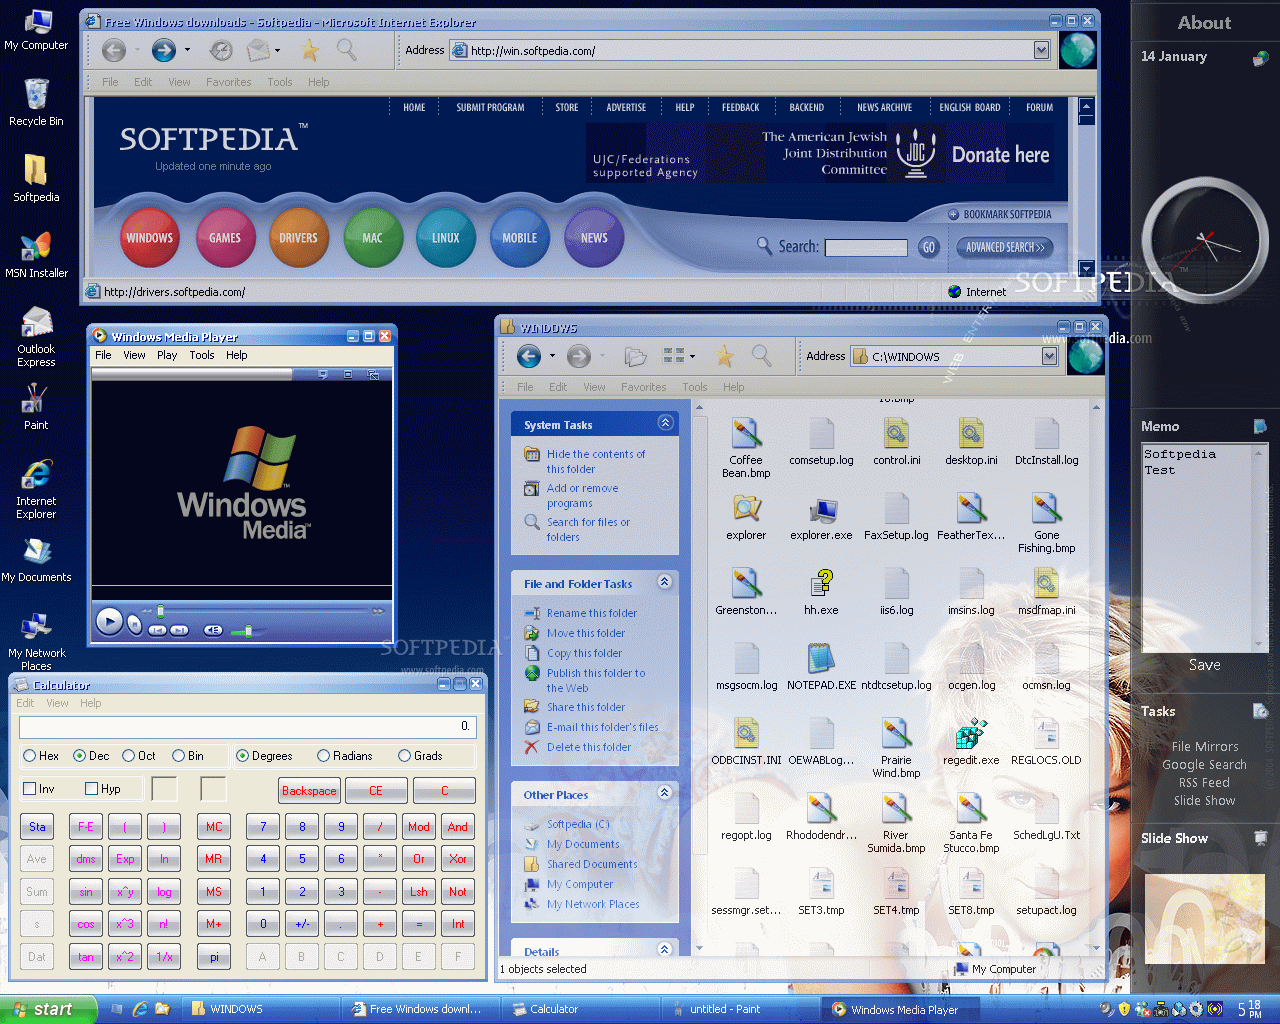 menu startowe talii transformacji Vista wymaga wielu kliknięć, aby otworzyć